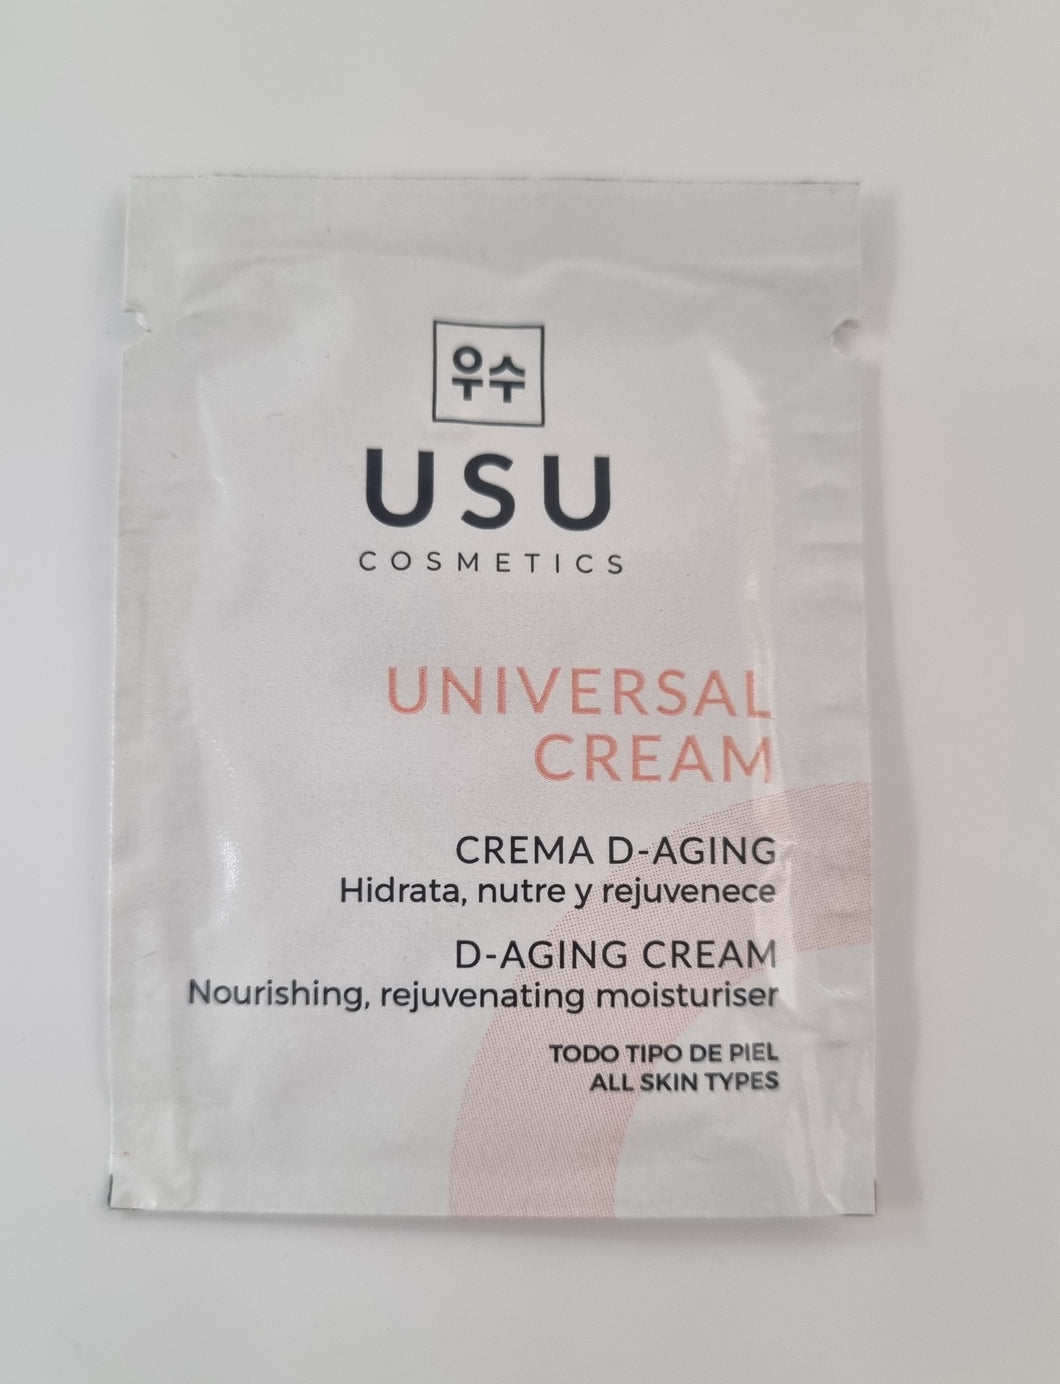 USU. Sachet Universal Cream, crema universal. 2 ml MUESTRA